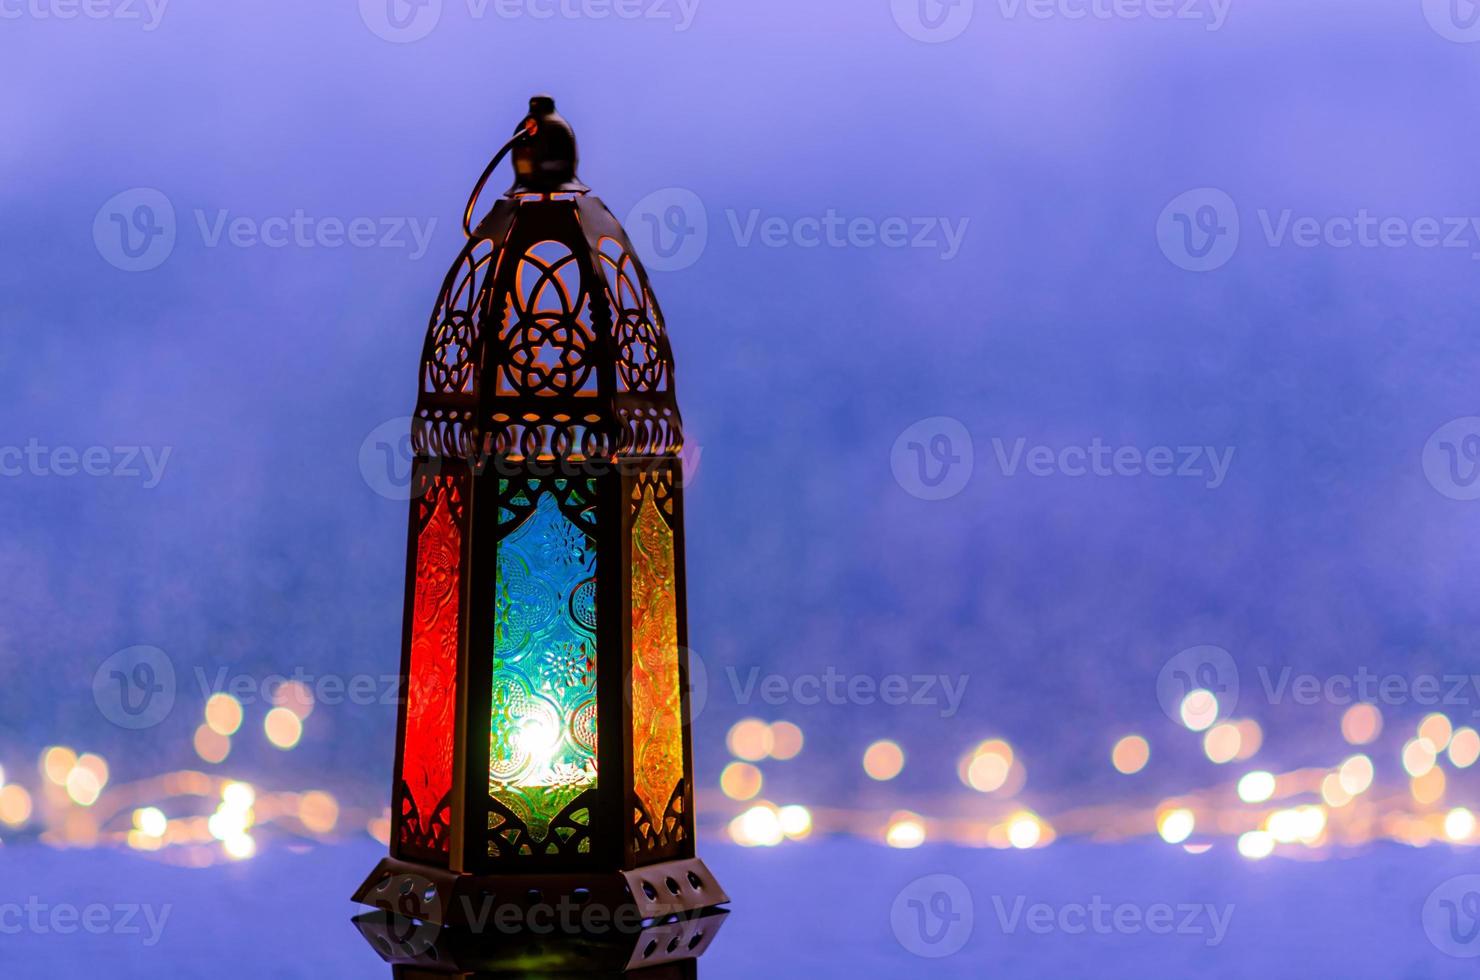 mise au point sélective sur le verre de couleur bleue de la lanterne avec des lumières décorant pour le nouvel an islamique mis au fond de la fenêtre avec bokeh de goutte de pluie. photo